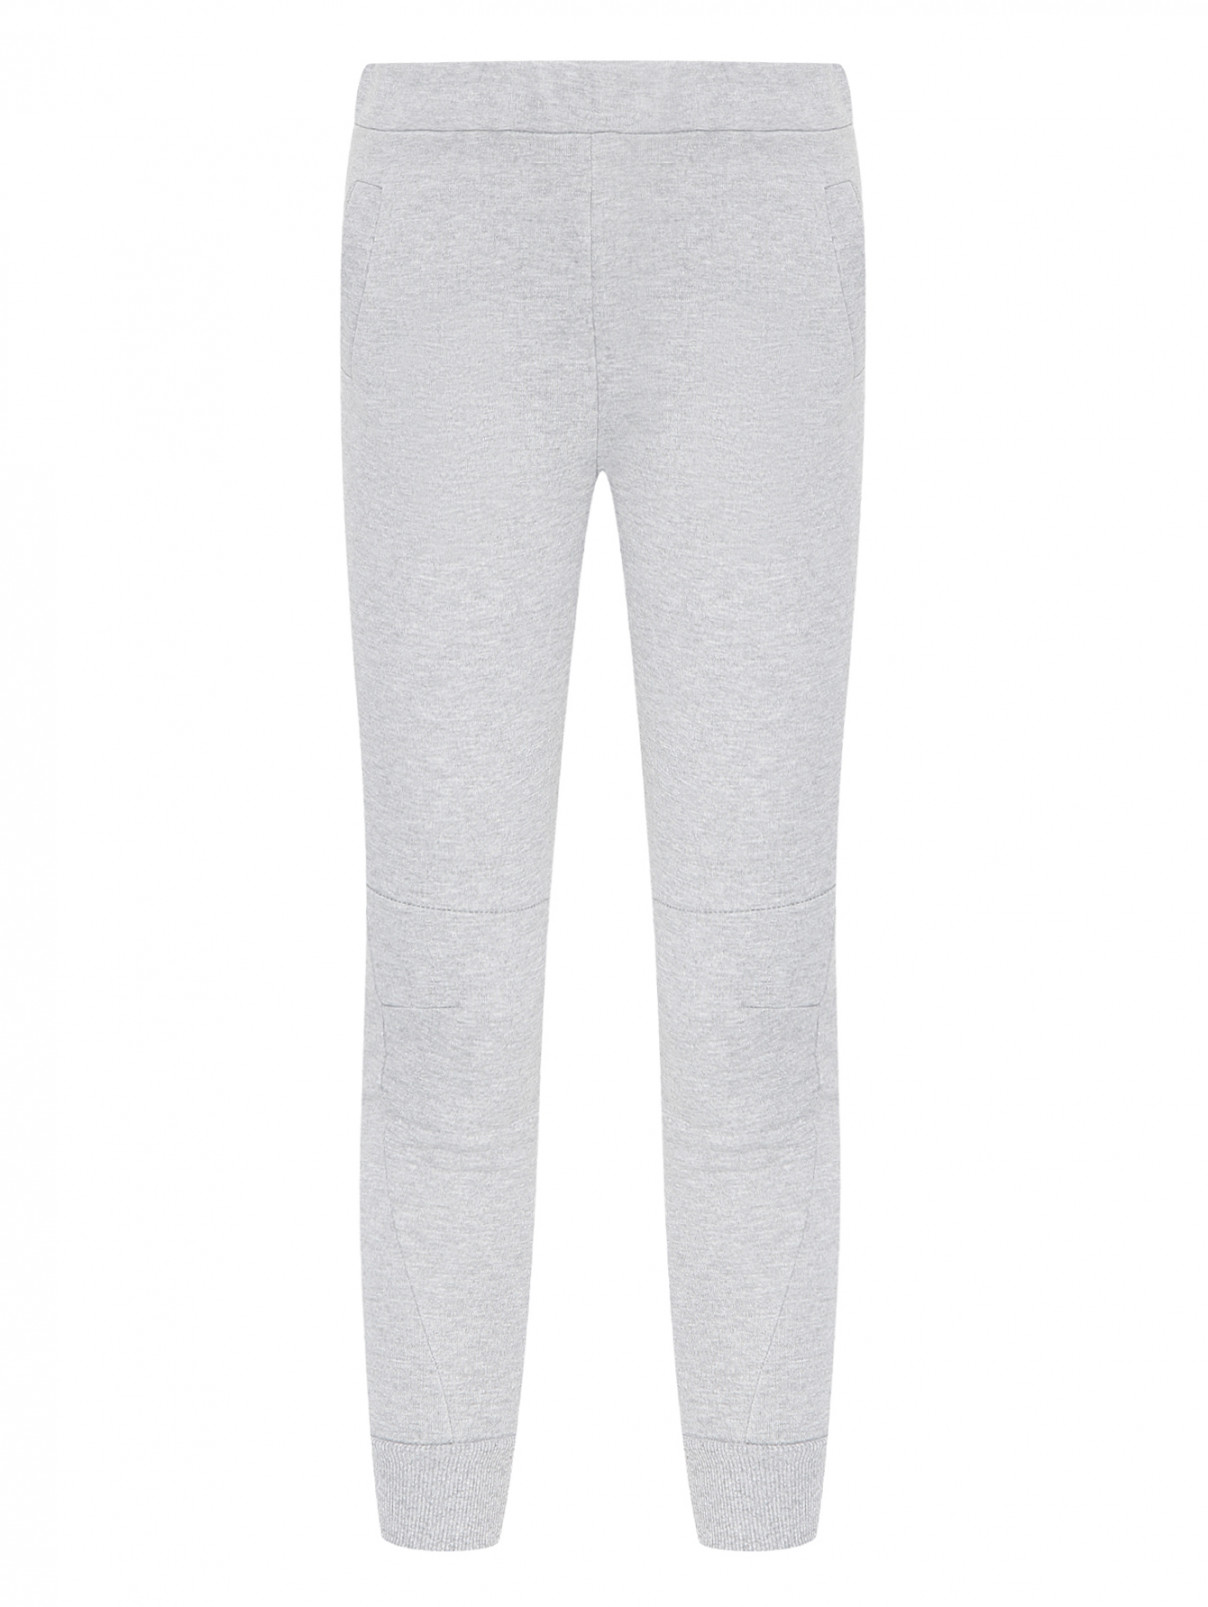 Трикотажные брюки с принтом Bisibiglio  –  Общий вид  – Цвет:  Серый